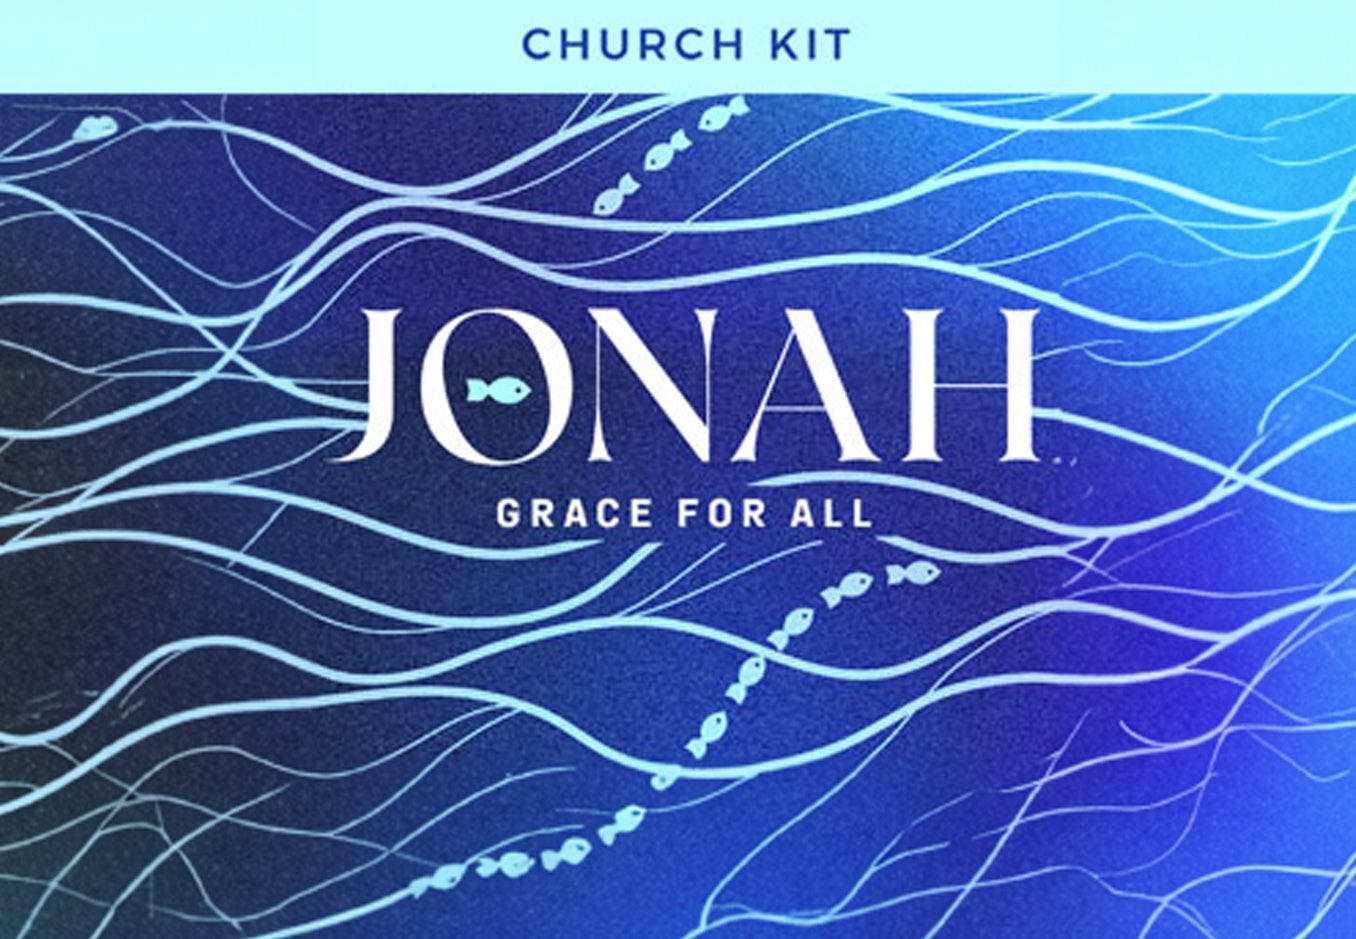 Jonah: Grace For All Digital Church Kit